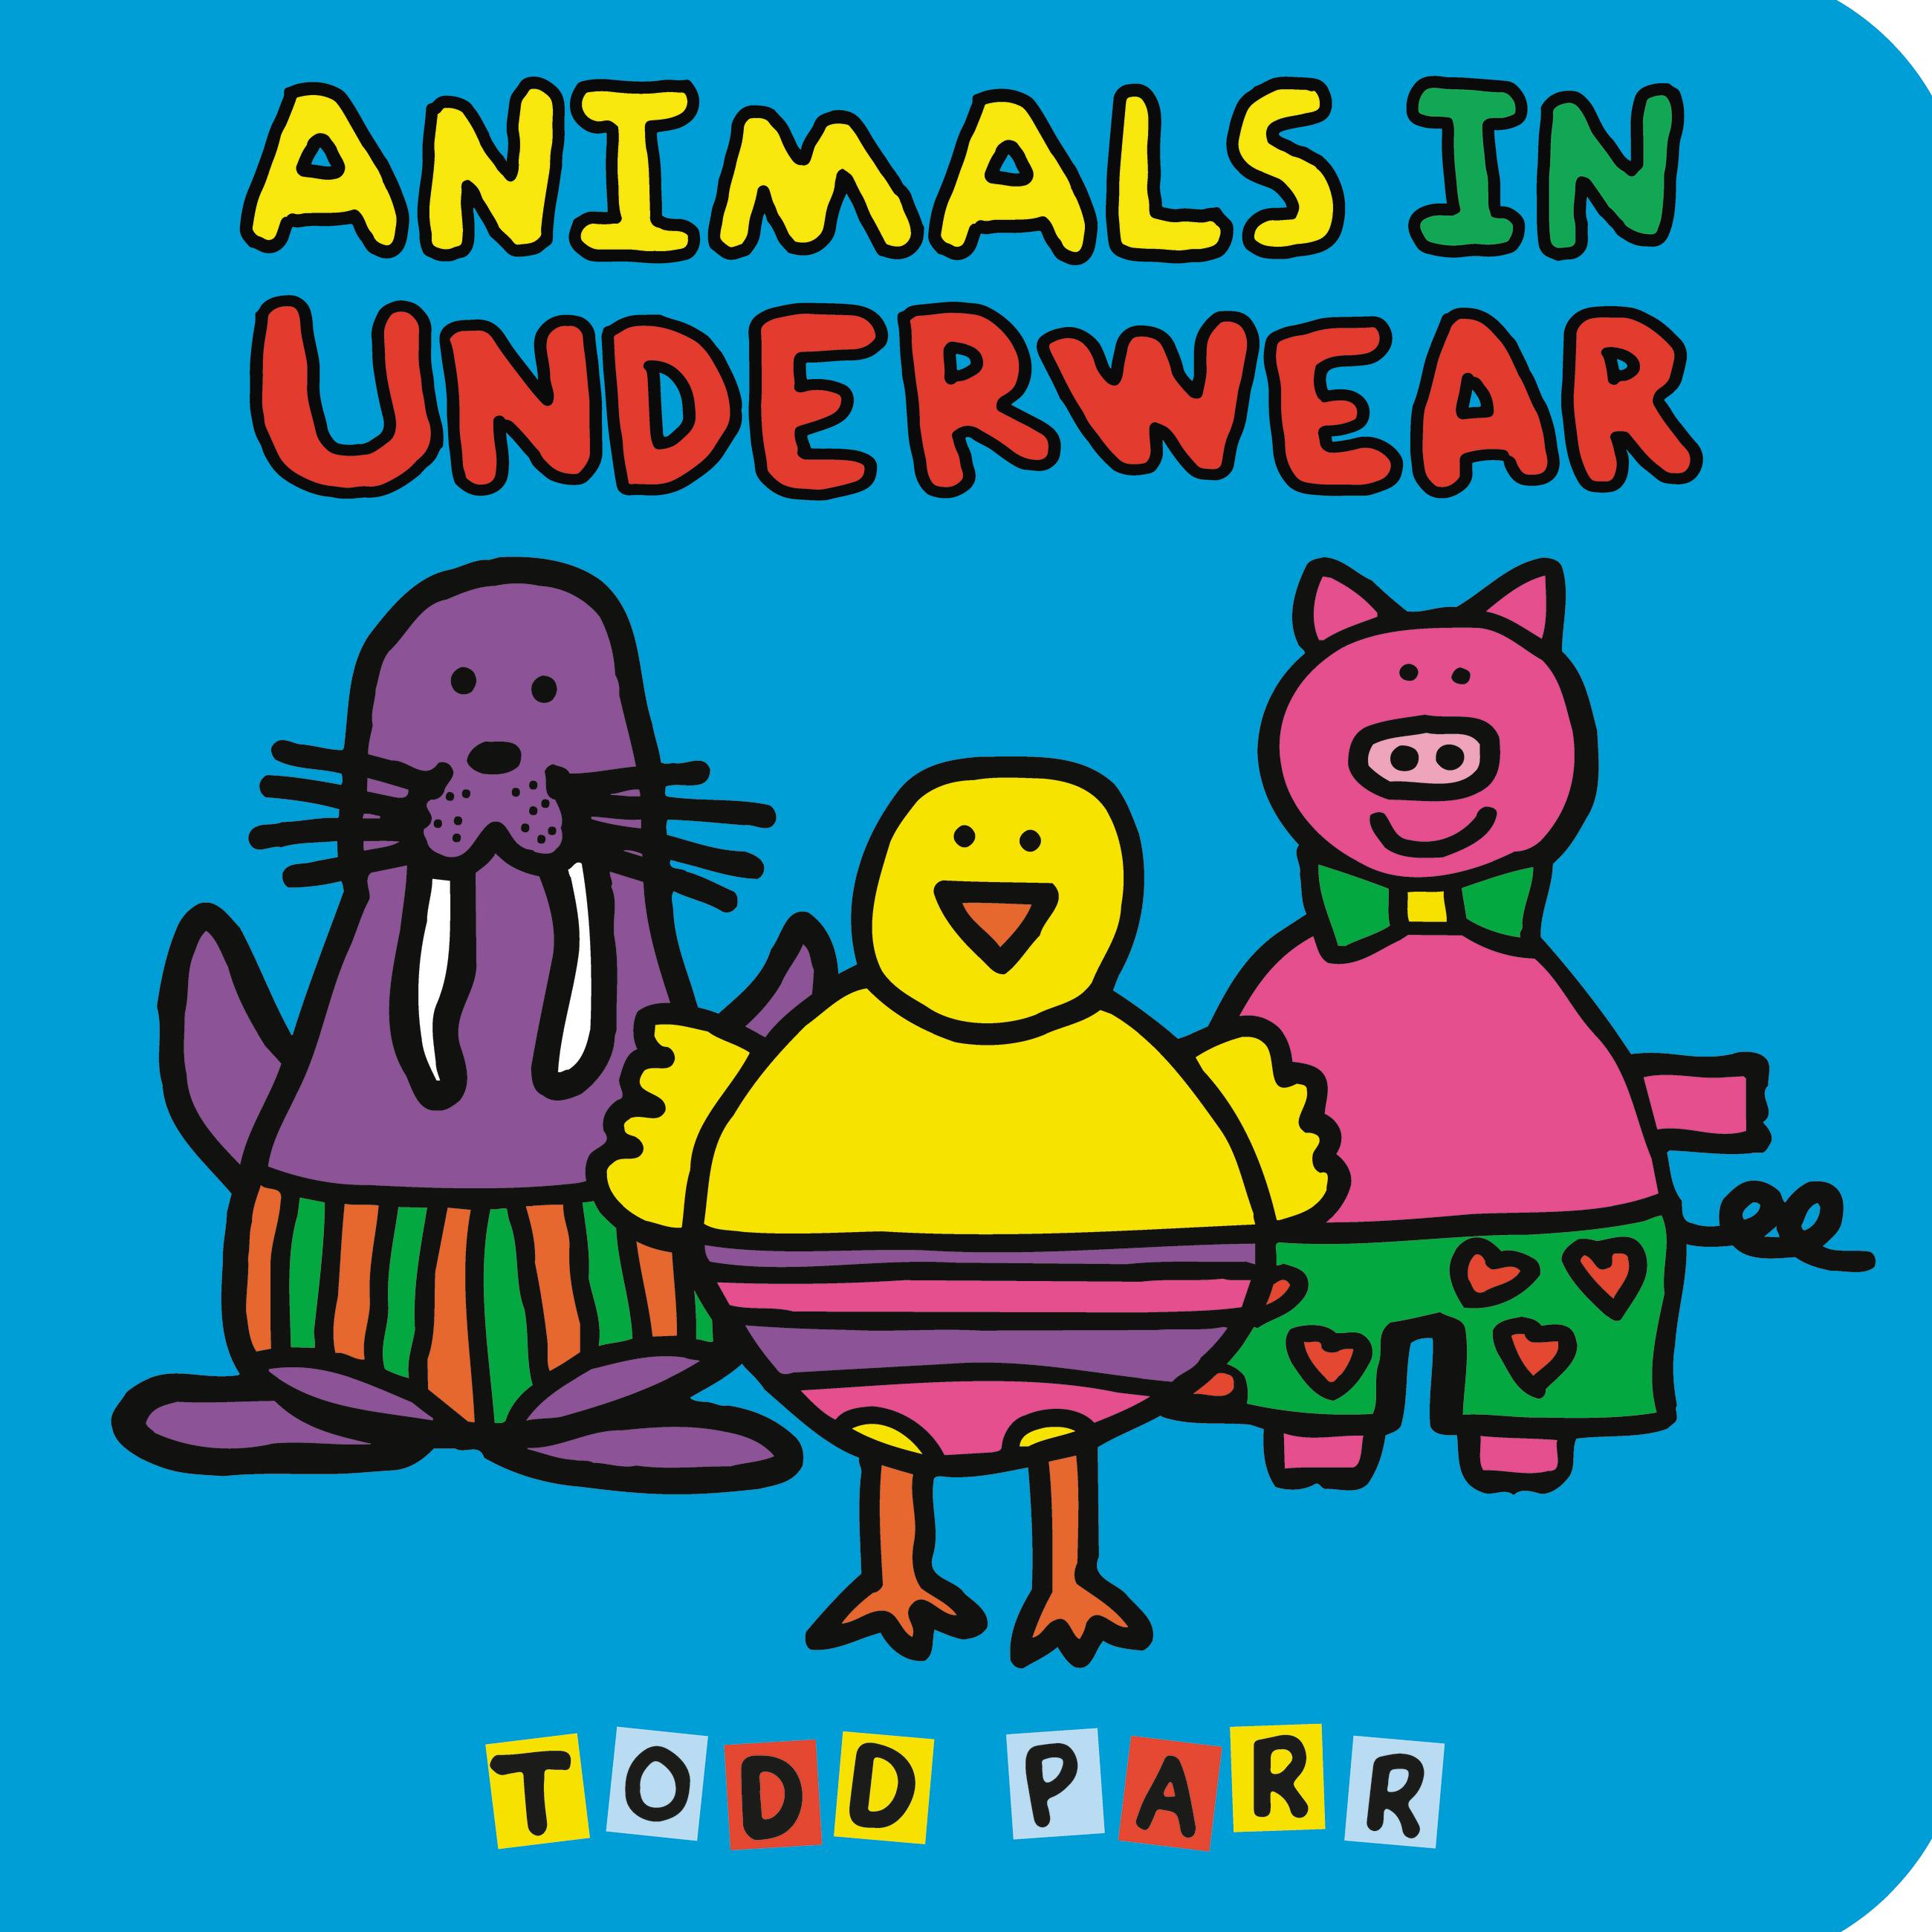 Animals in Underwear ABC by Todd Parr